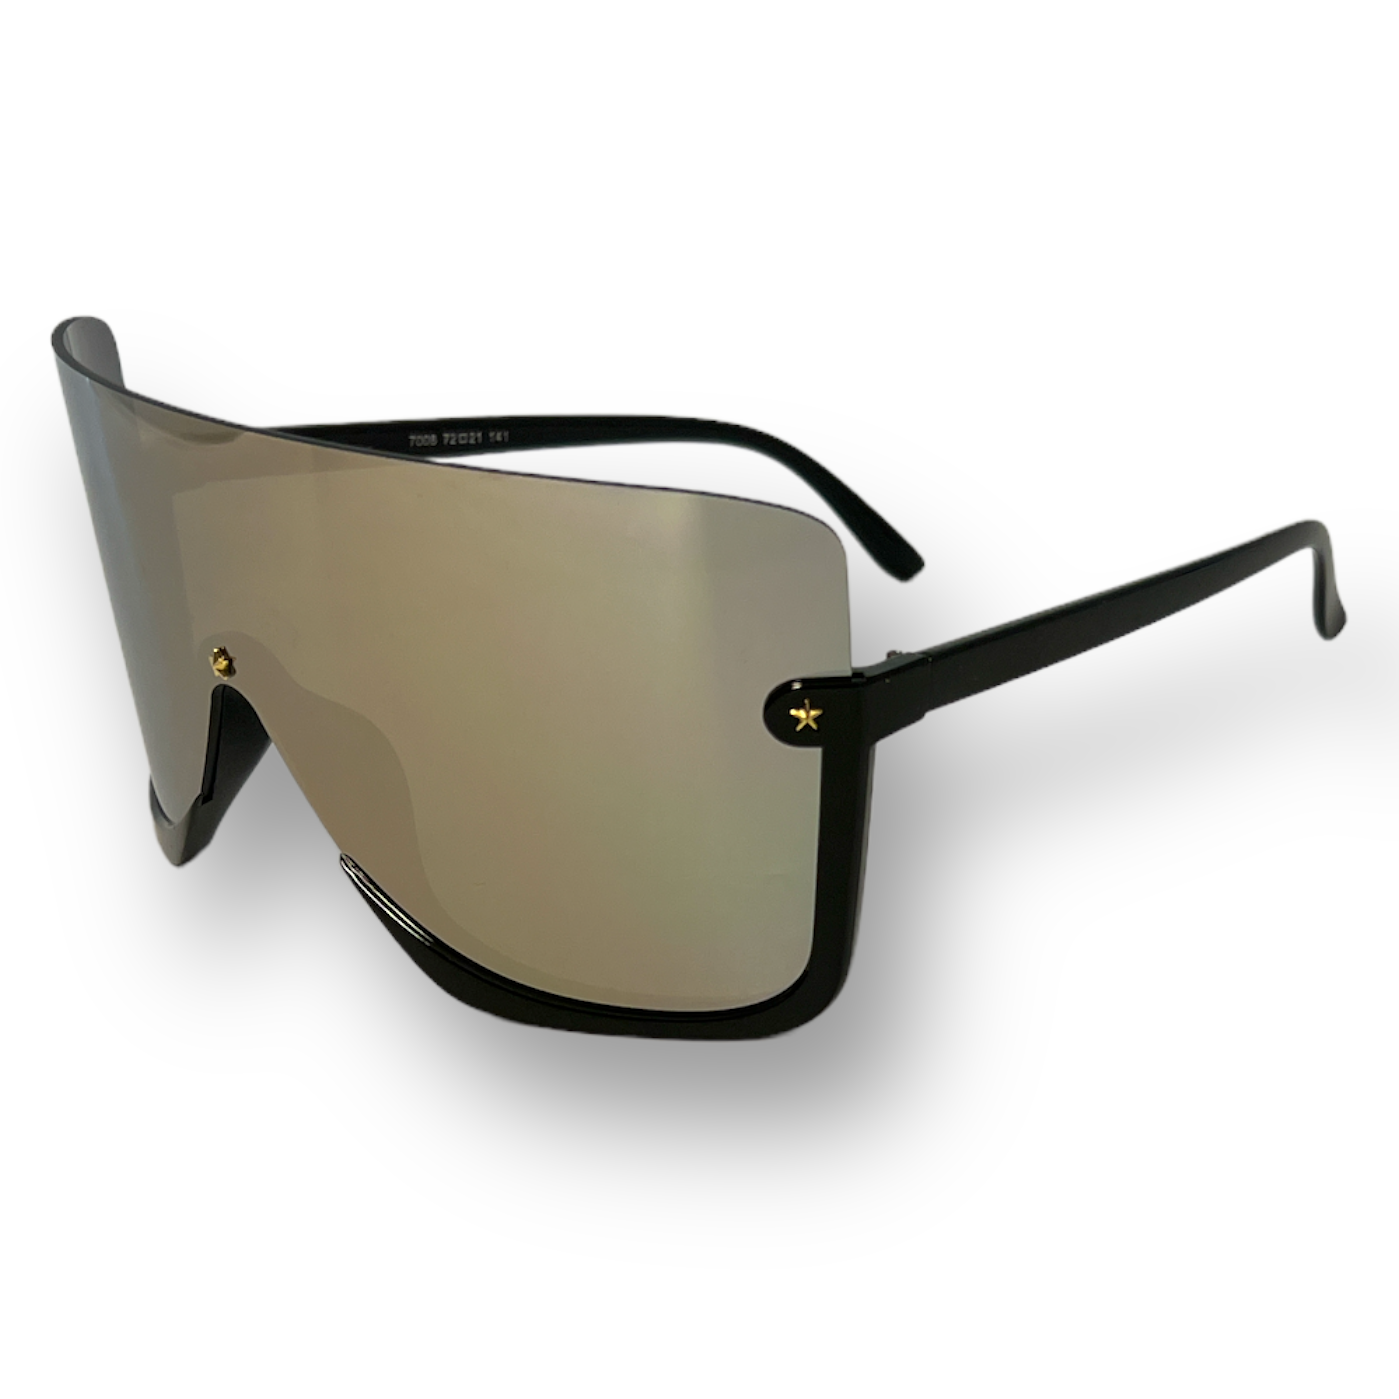 Unbranded Sunglasses – Slim Shadies Celebrity Sunglasses